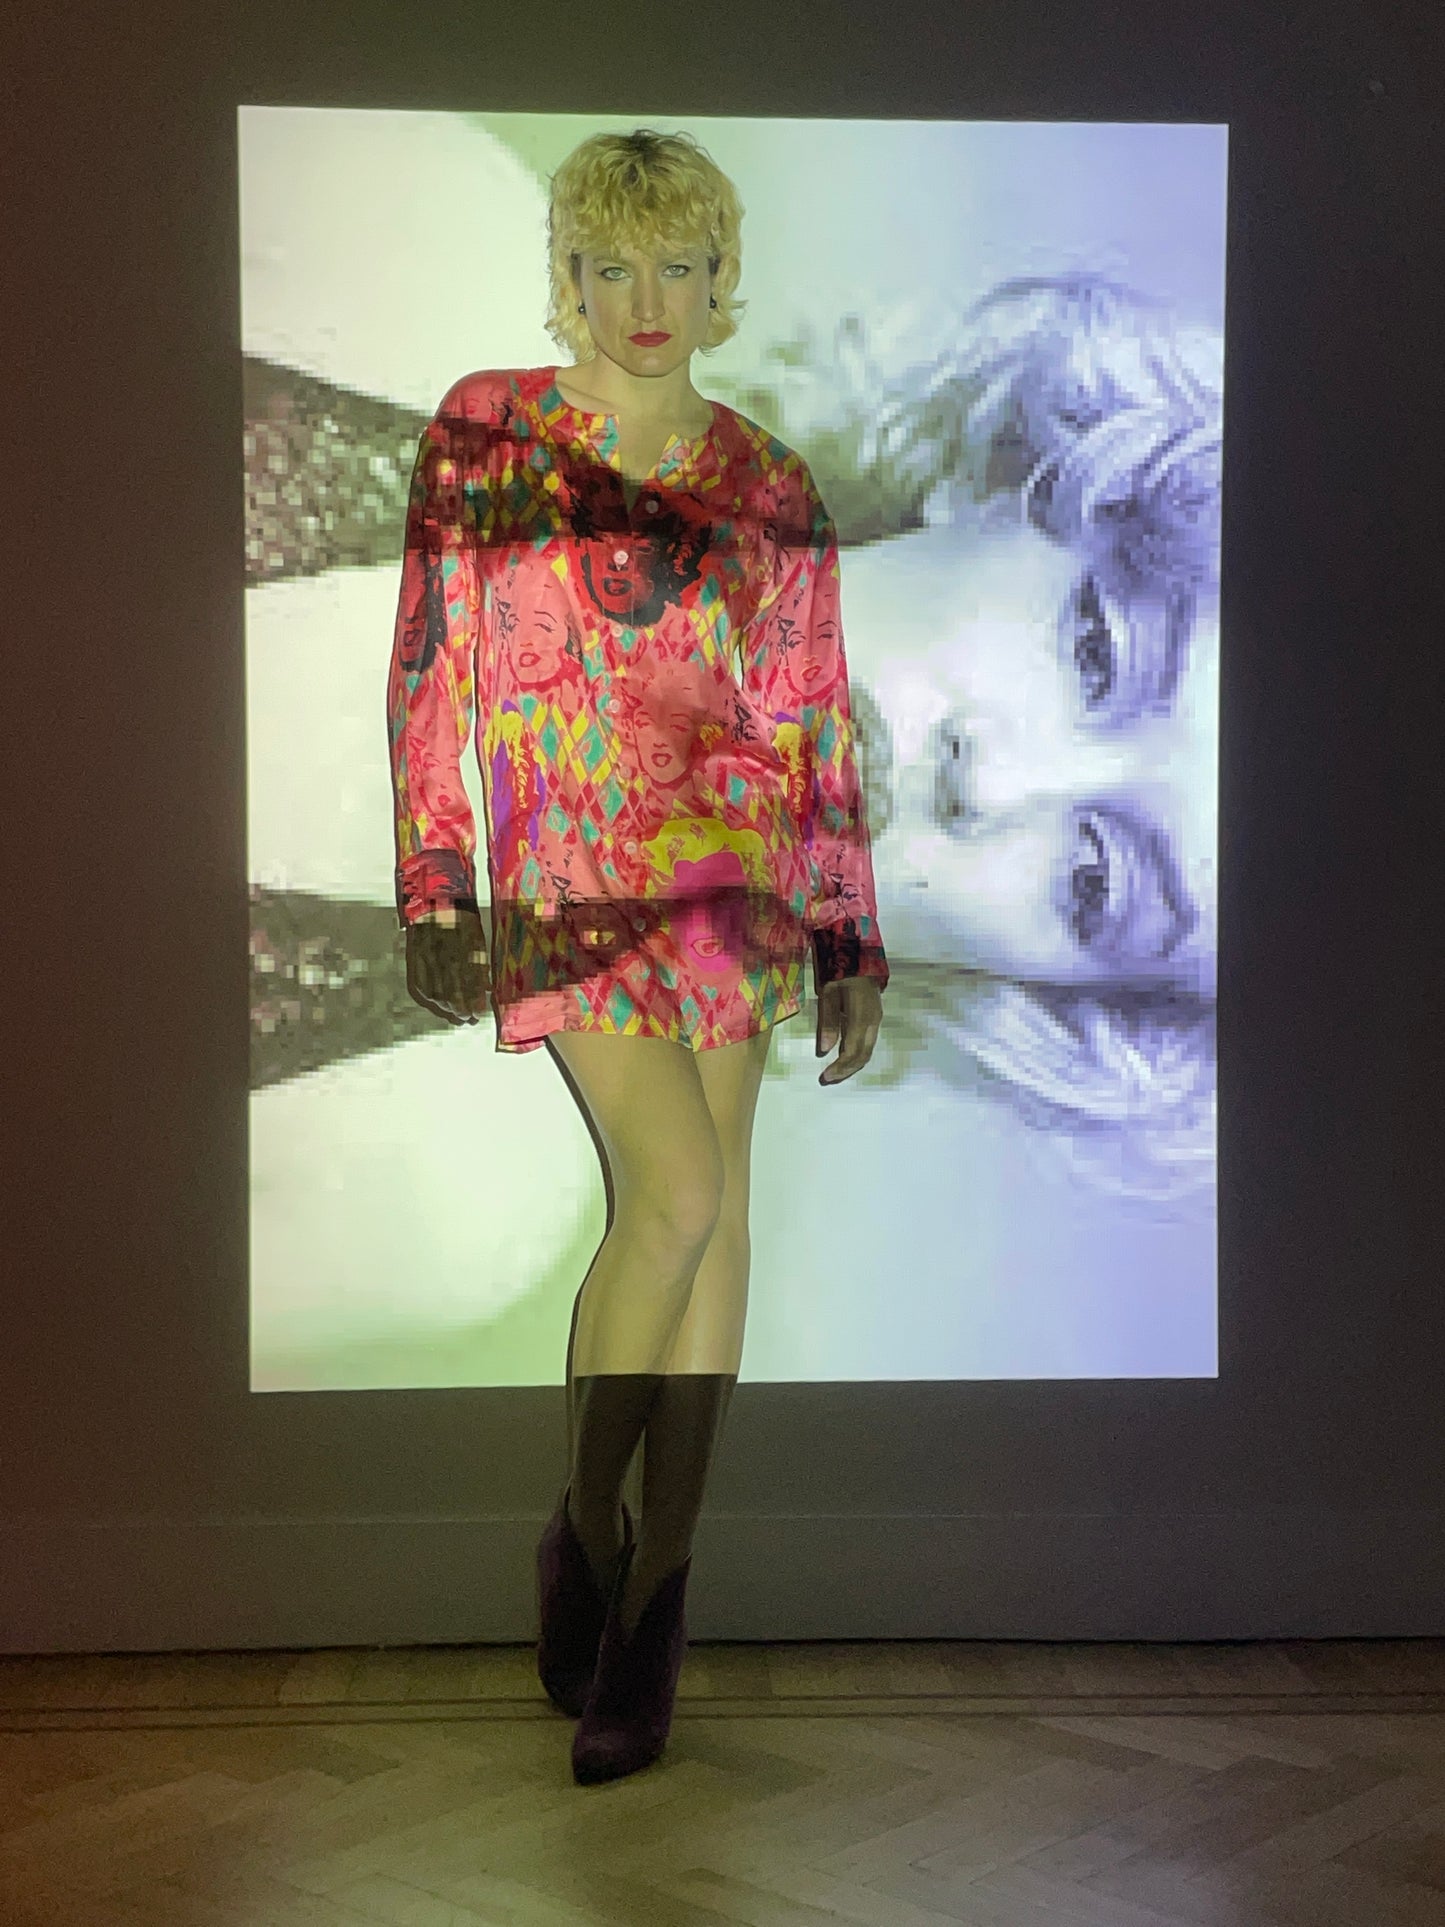 Escada 80's Marilyn Monroe Andy Warhol Pop Art print silk shirt